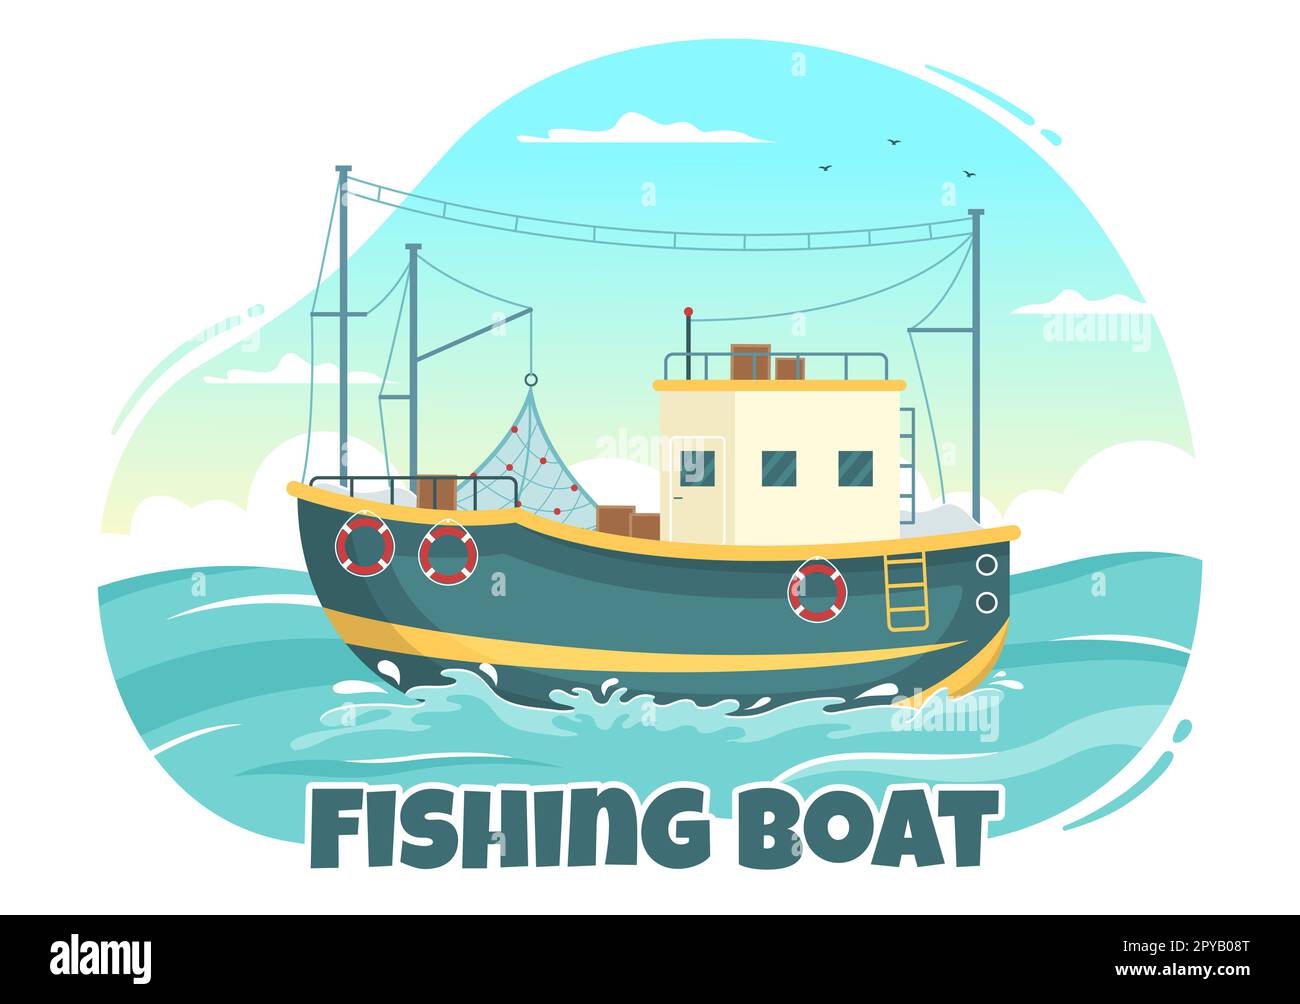 Ilustración de barco de pesca con pescadores de caza de peces usando barco para banner web o página de aterrizaje en dibujos animados planos Dibujado a mano Plantillas vectoriales Foto de stock